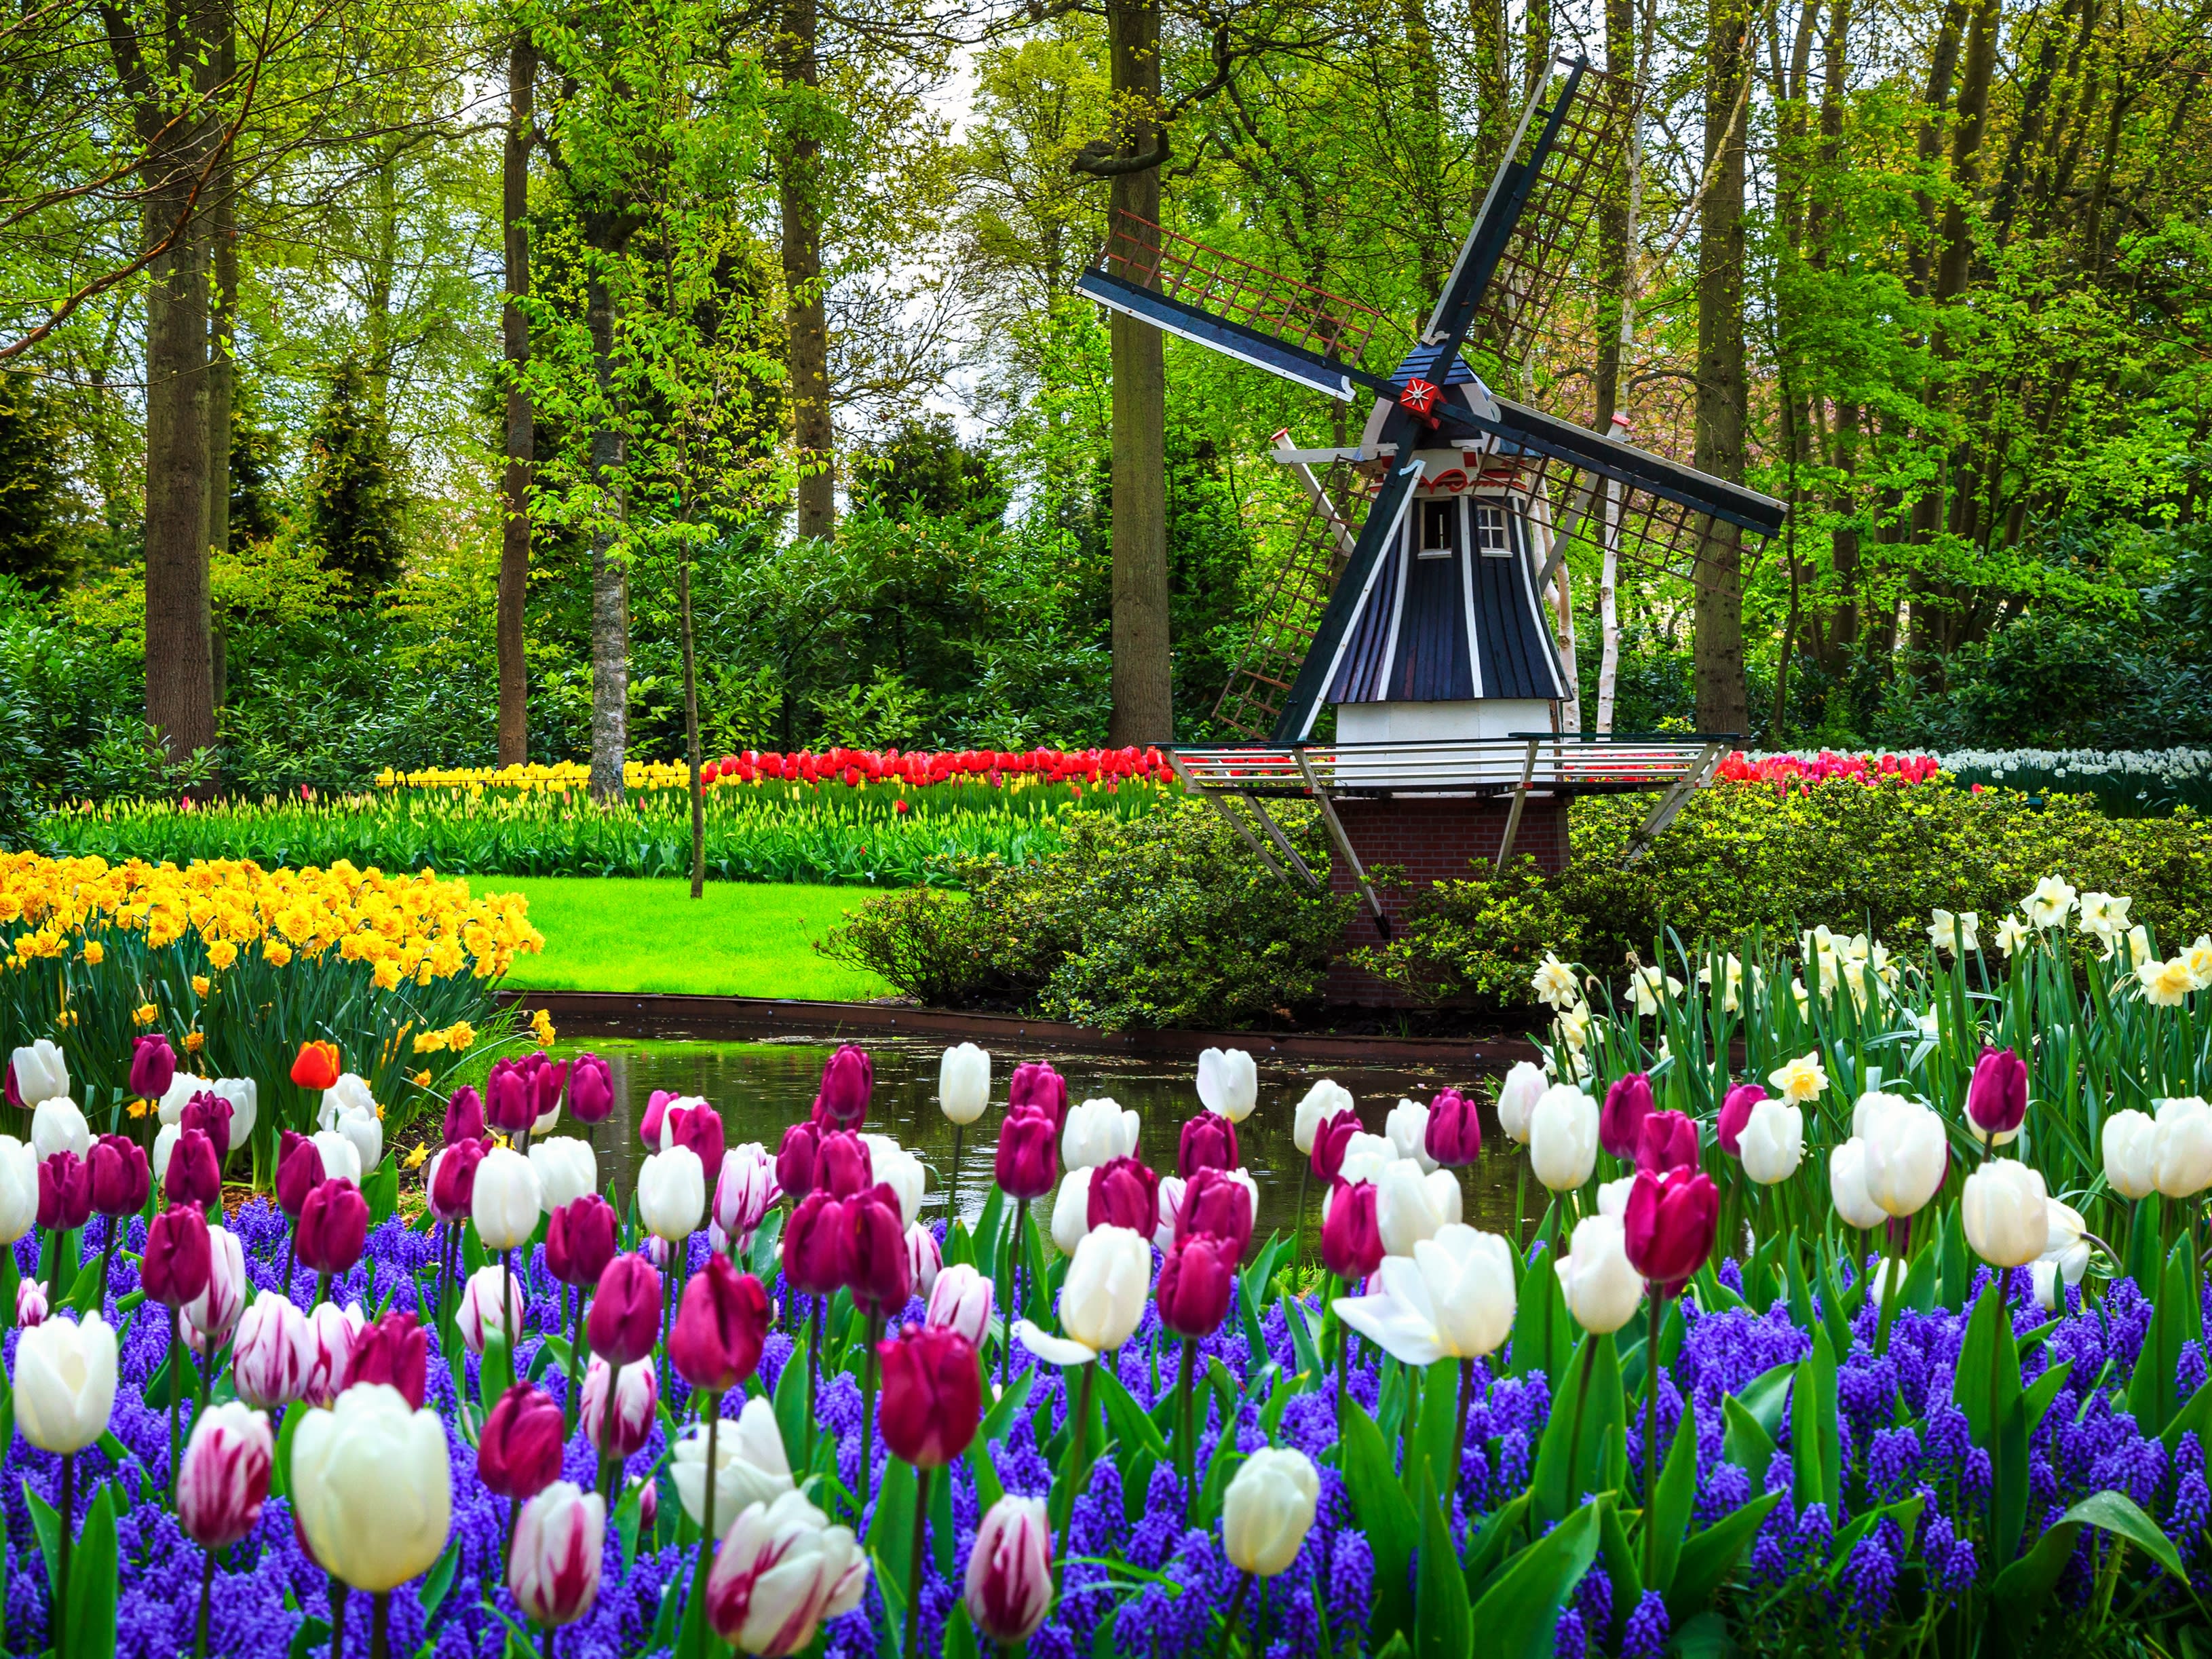 送料無料人気SALE□ オランダ キュウケンホフ公園 ⑦ 風景写真 額縁付 A3サイズ 自然、風景